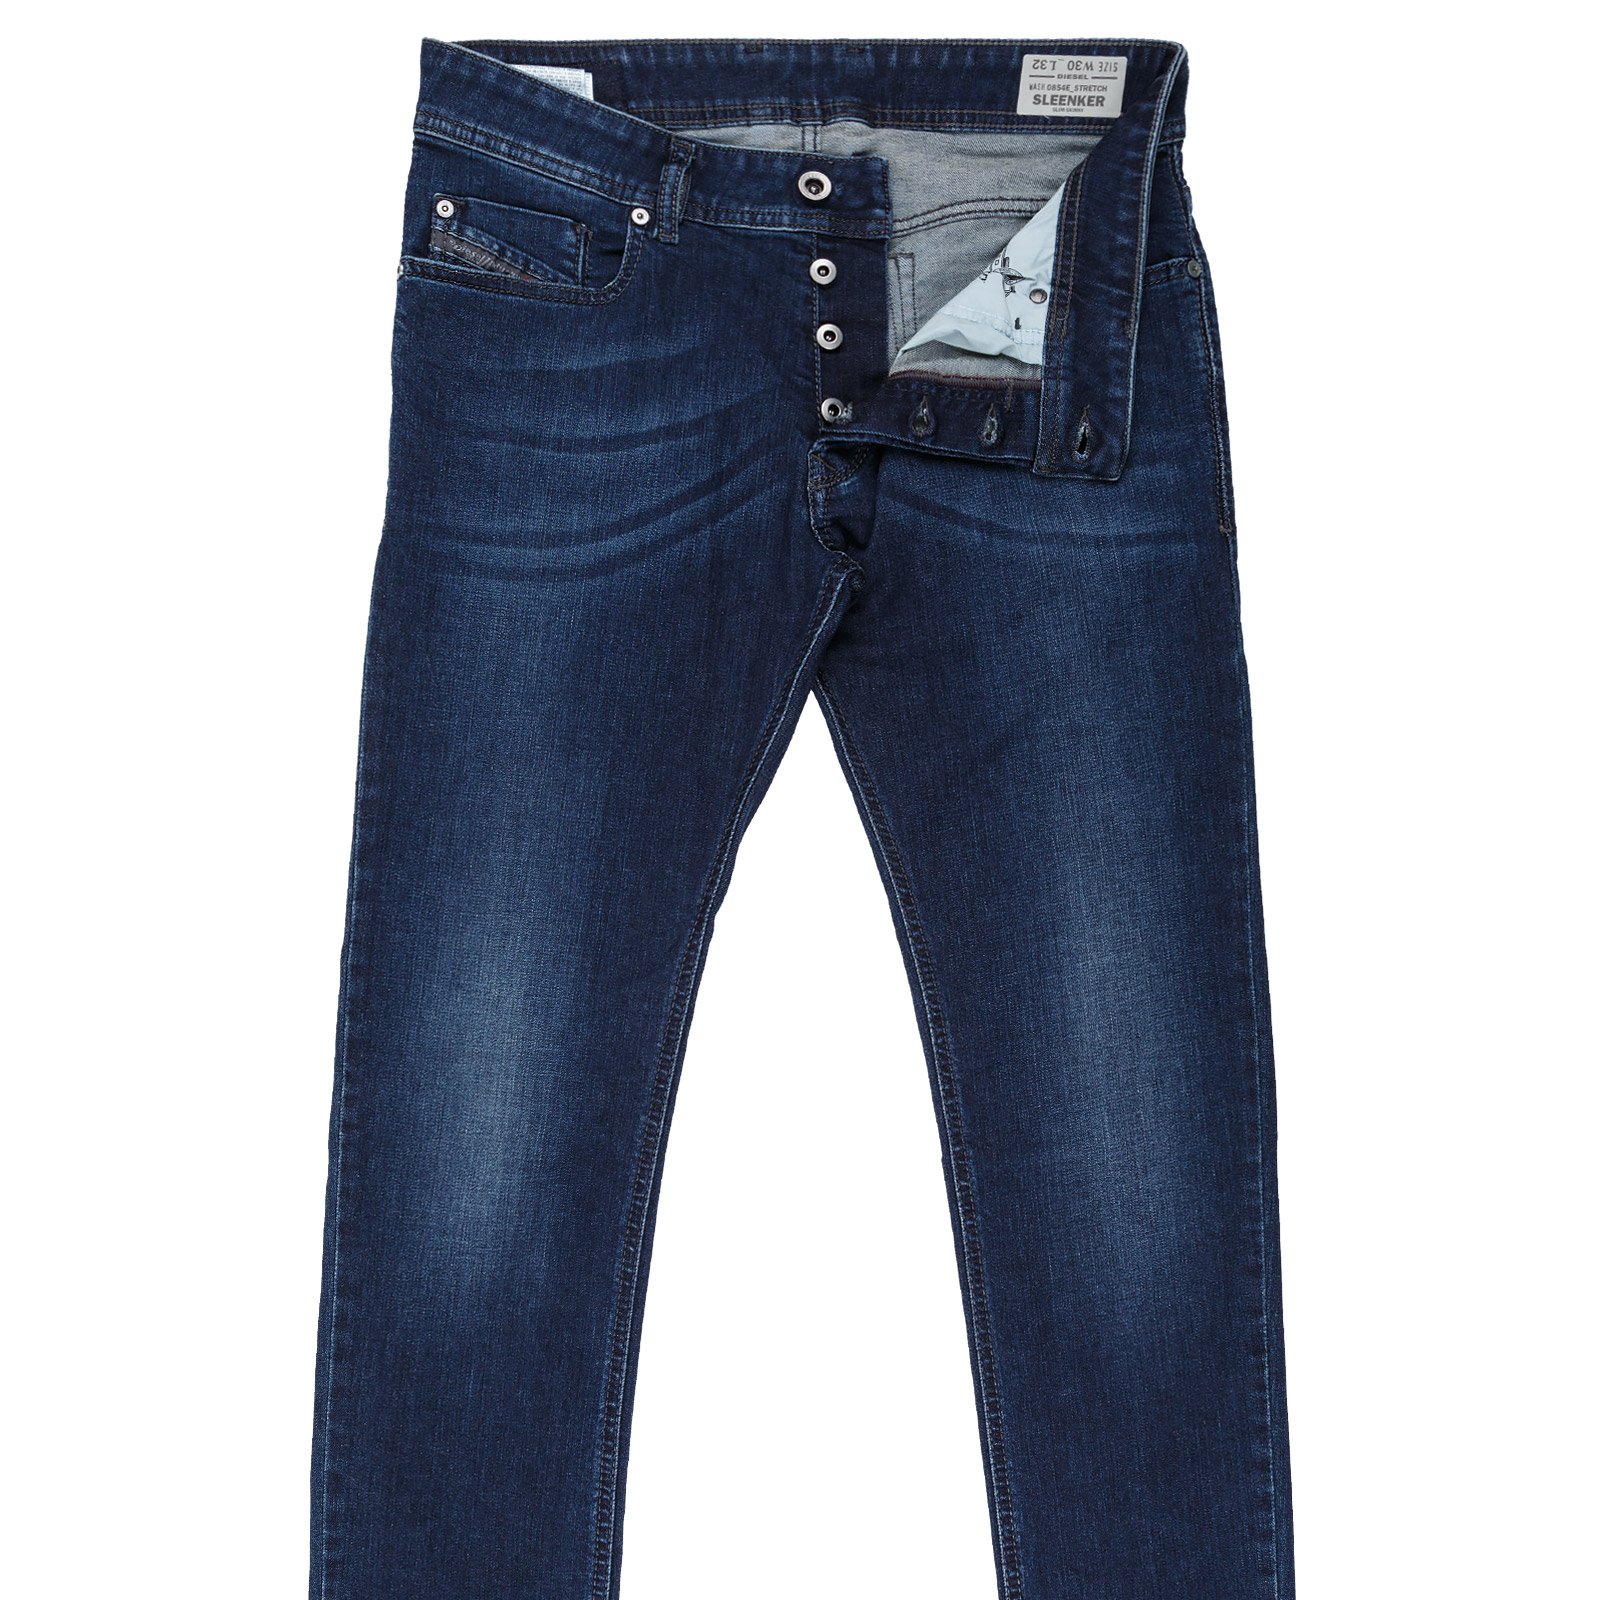 Skinny Fit Denim Jeans On Sale : Fifth Avenue Menswear - DIESEL 2016SS-C5